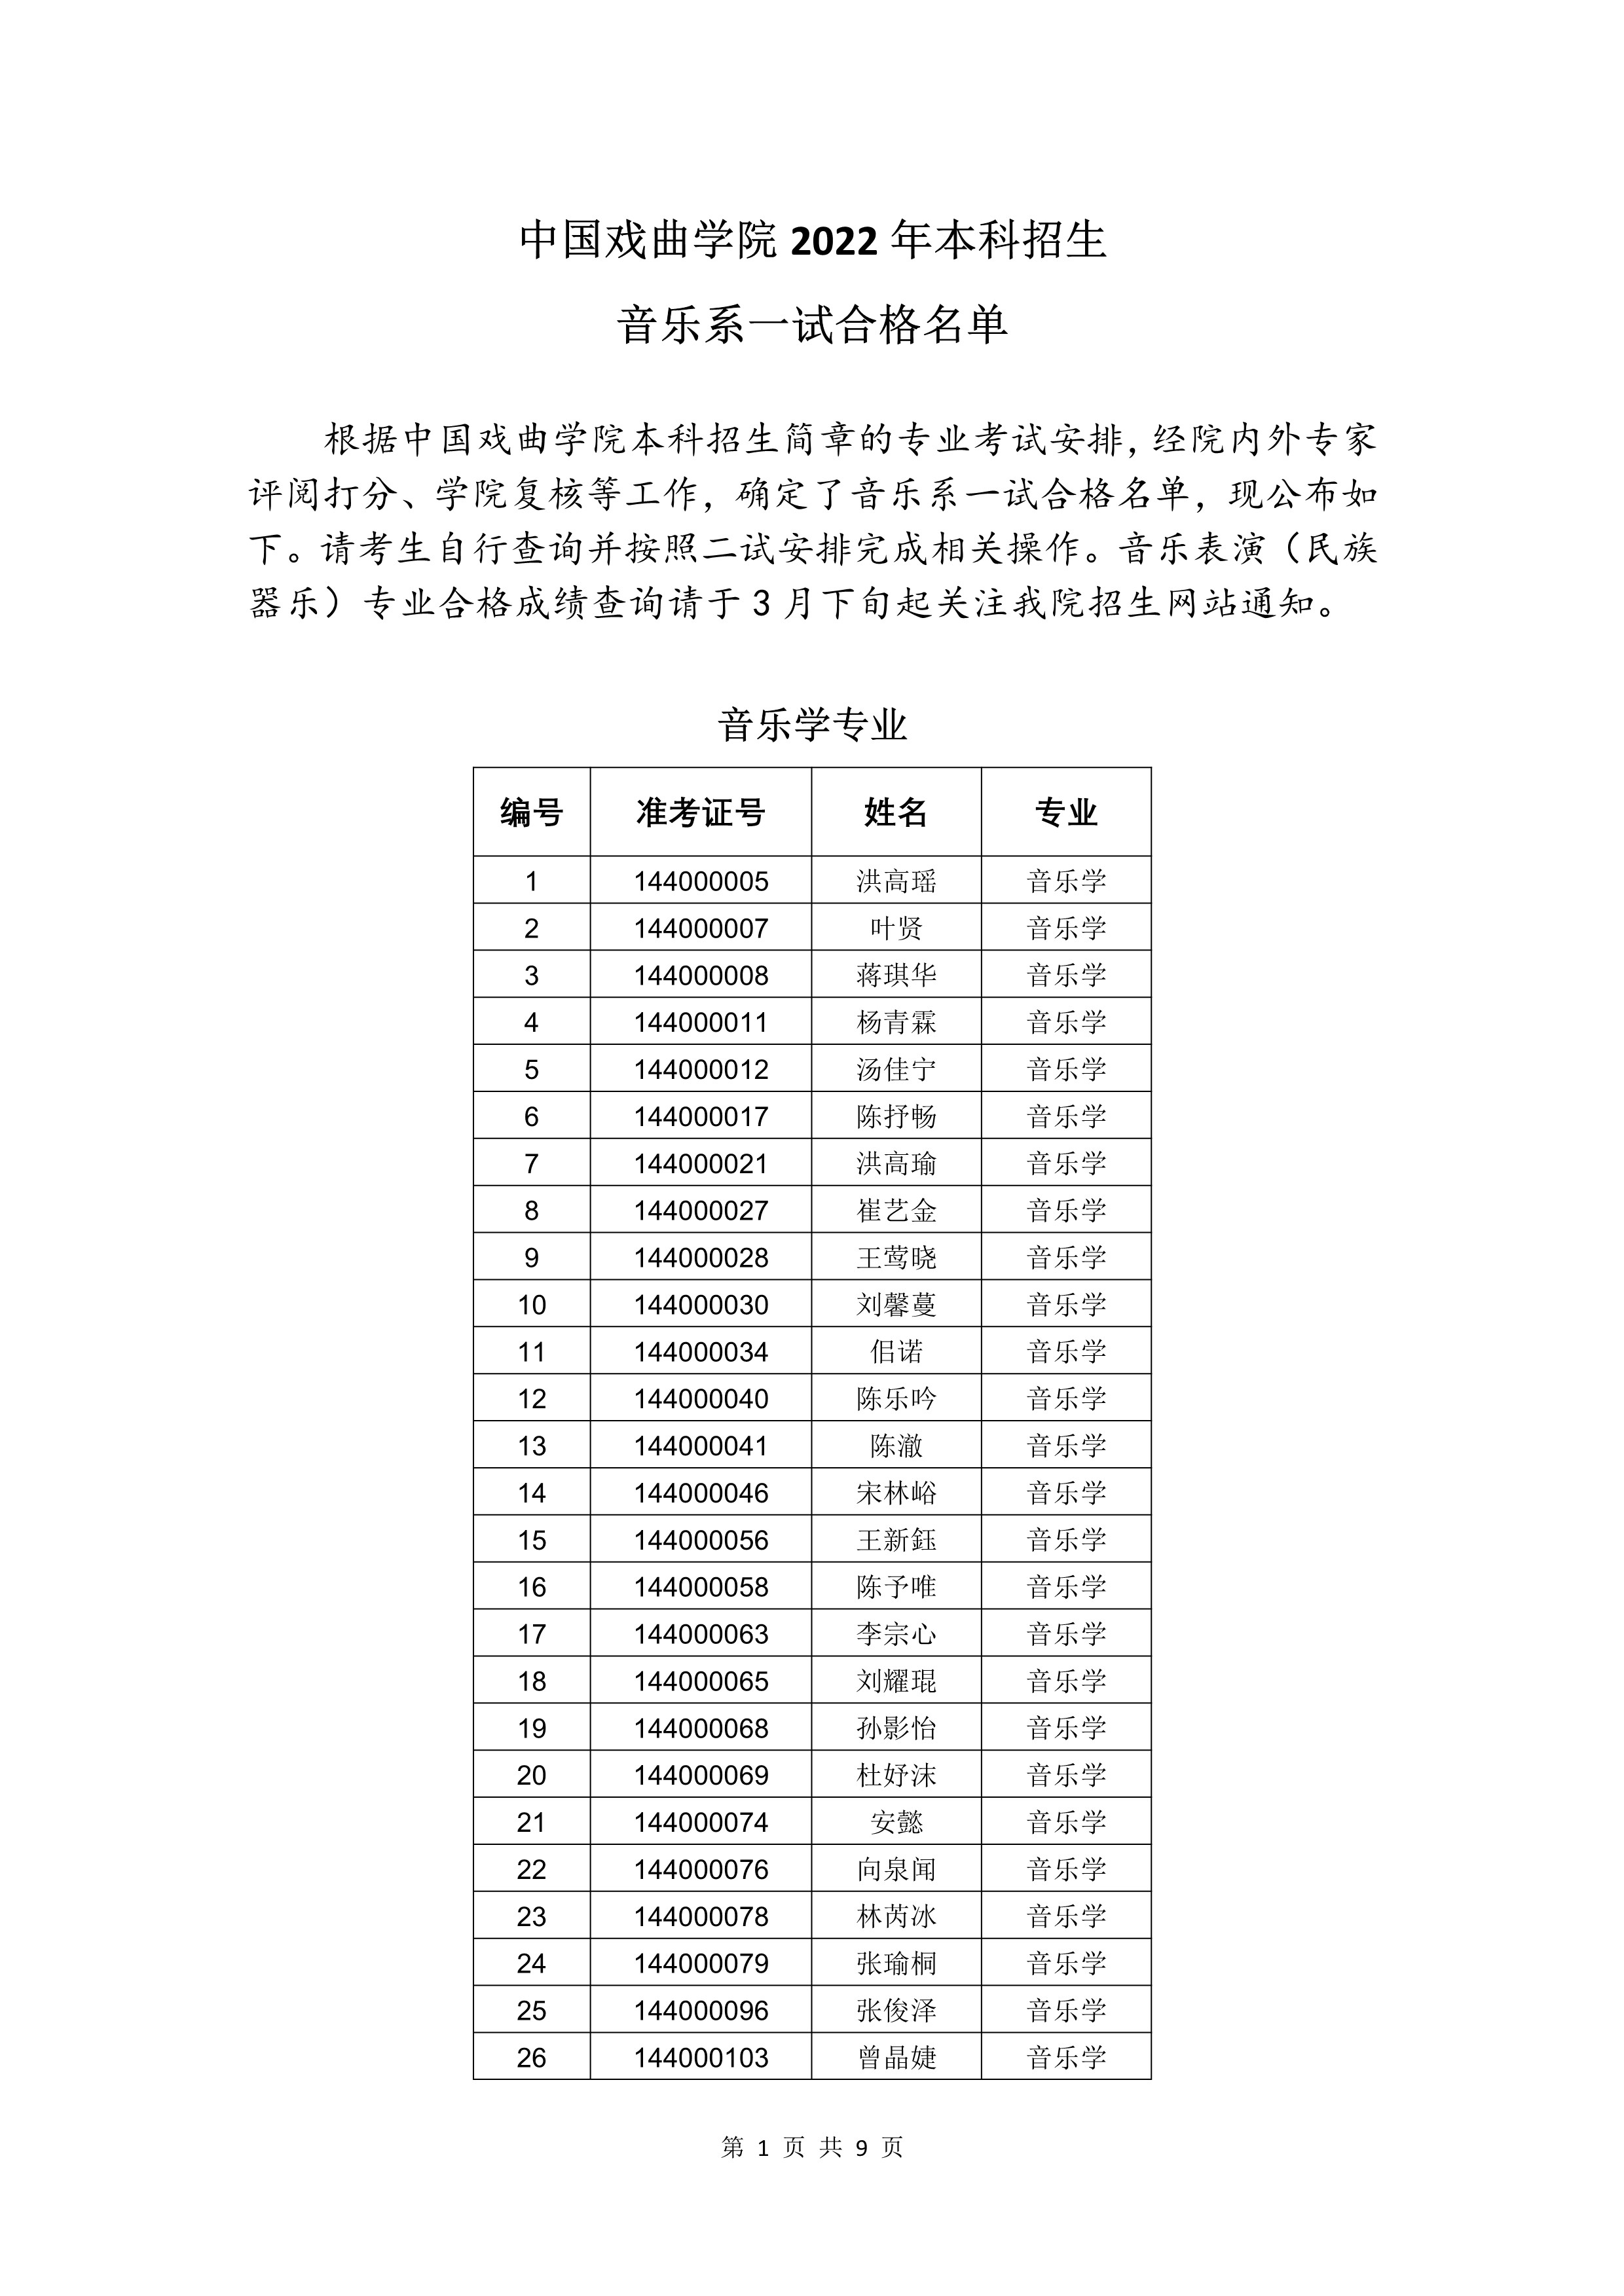 附件-中国戏曲学院2022年本科招生音乐系一试合格名单 (1)_1.jpg